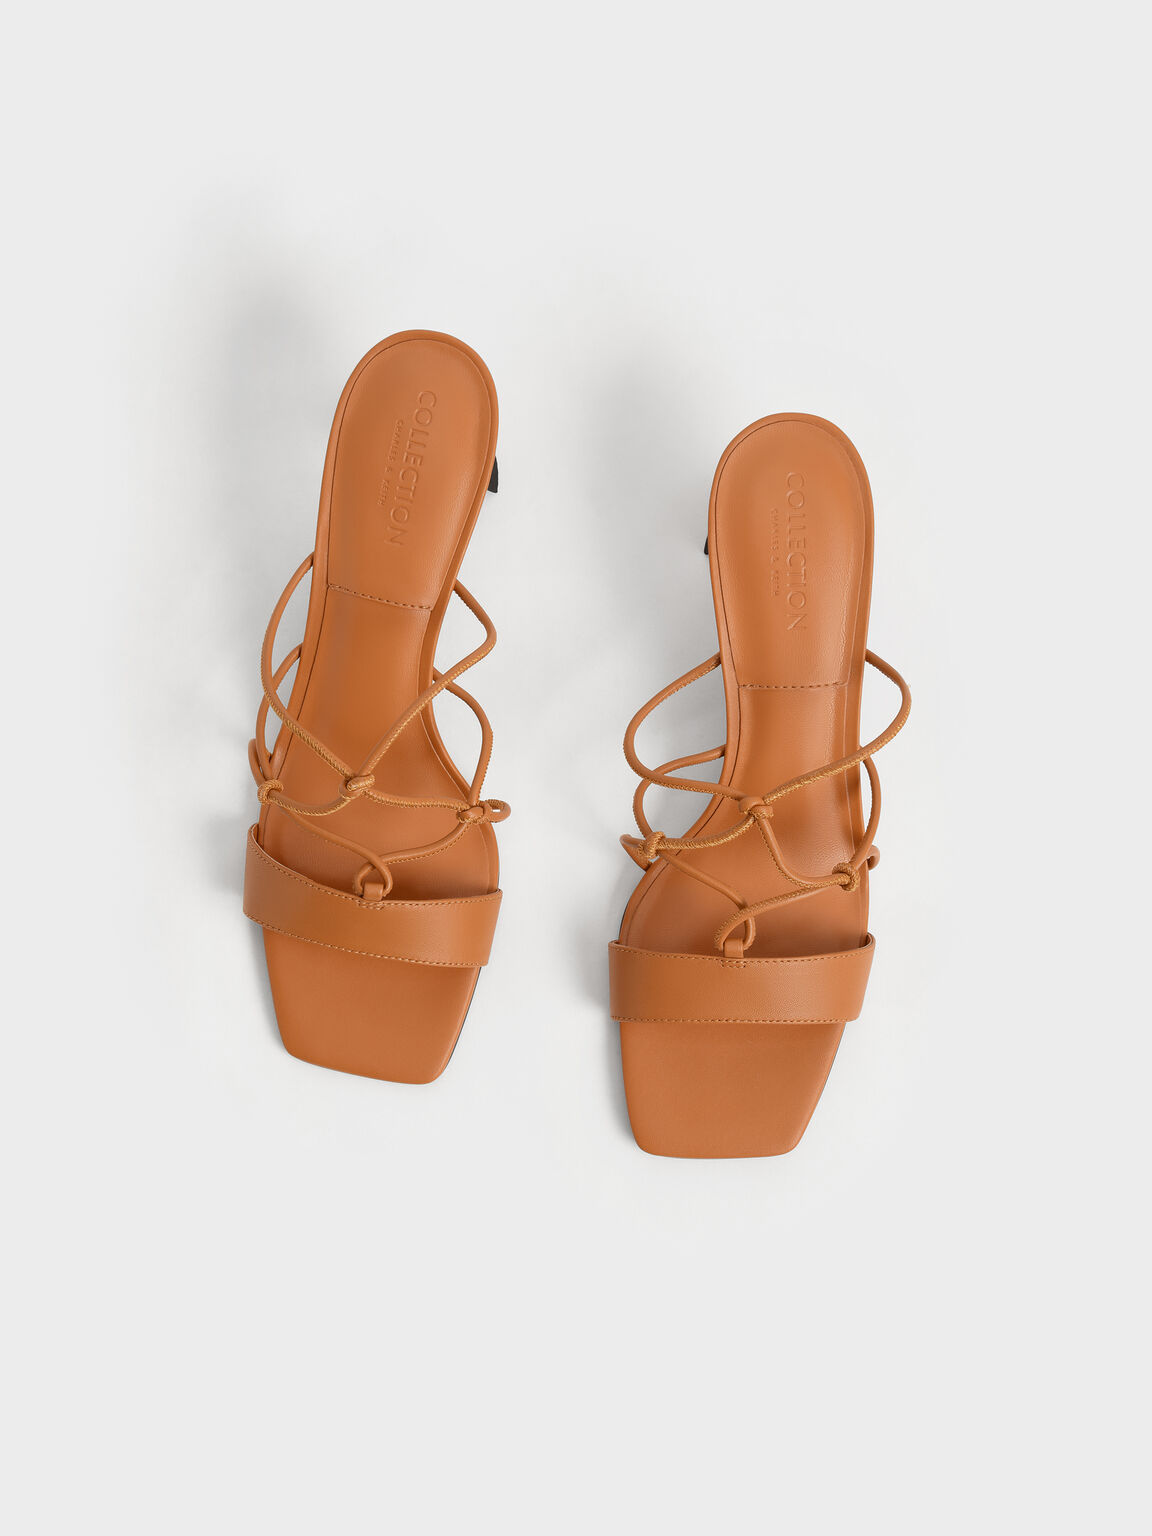 Sandal Sculptural Heel Strappy Leather, Orange, hi-res